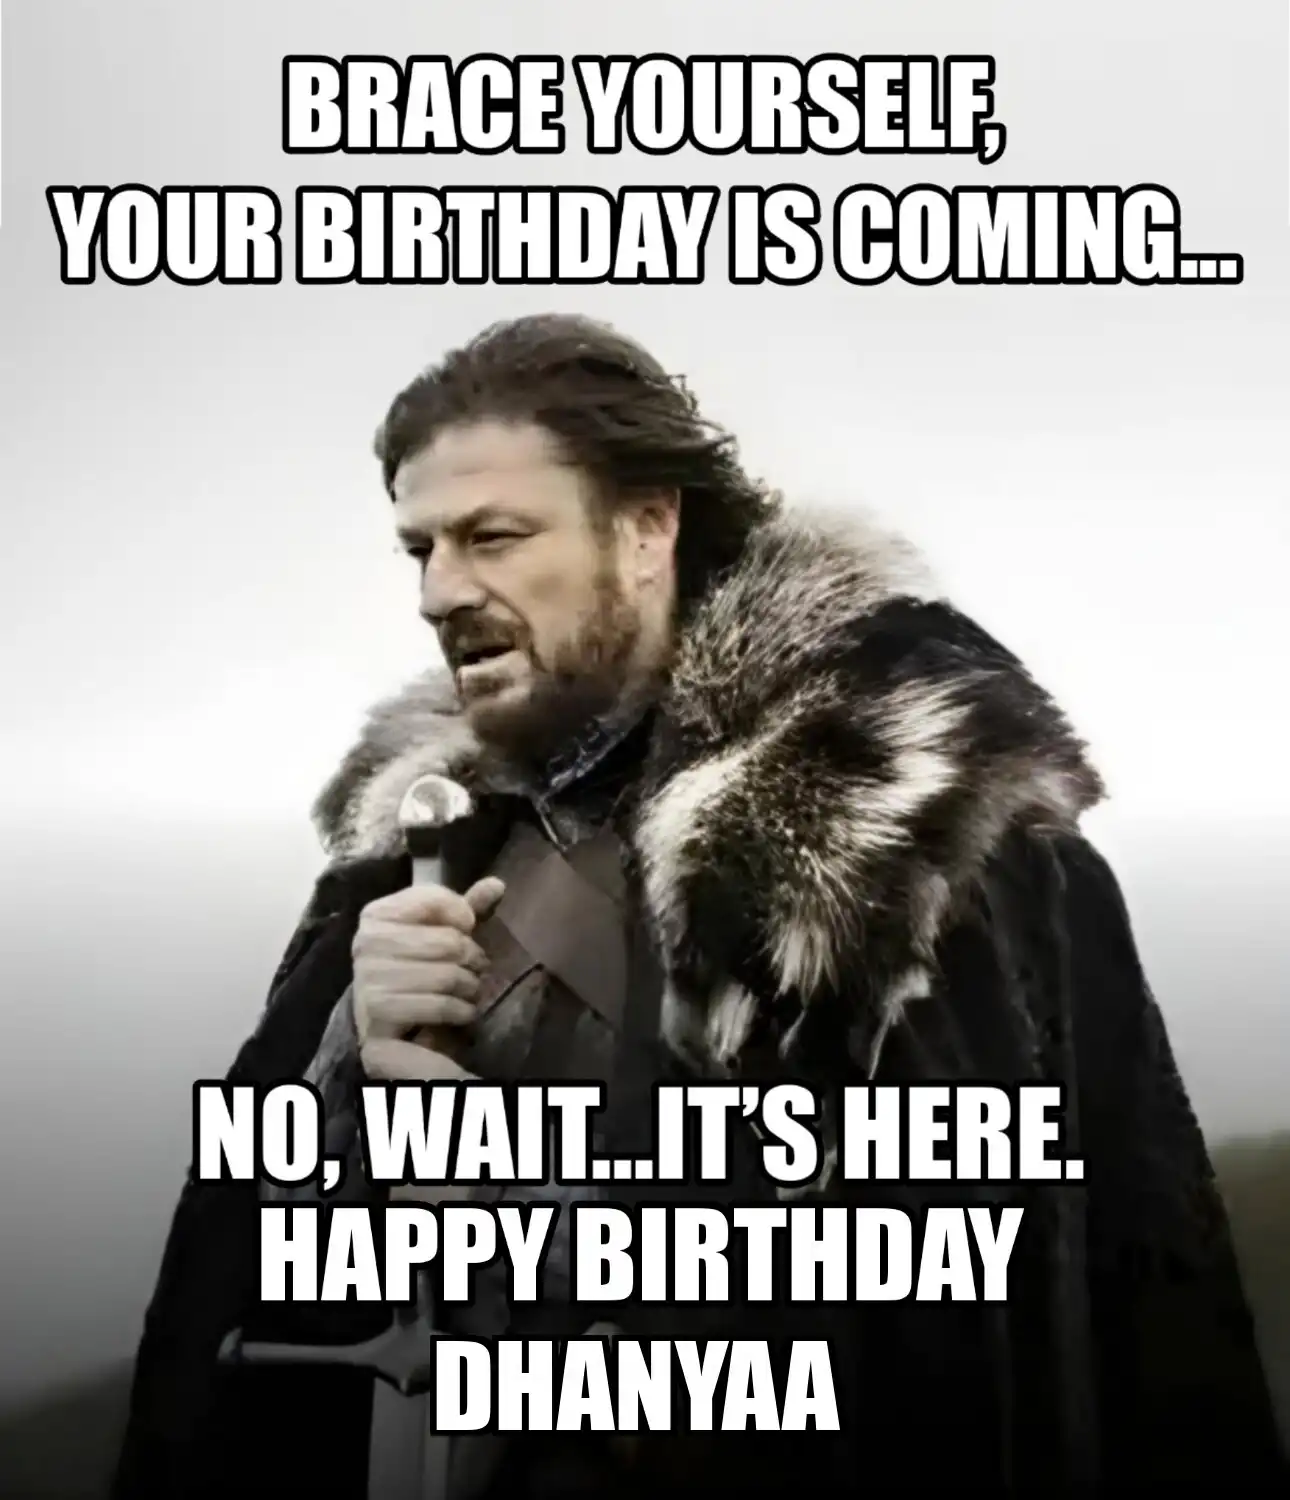 Happy Birthday Dhanyaa Brace Yourself Your Birthday Is Coming Meme